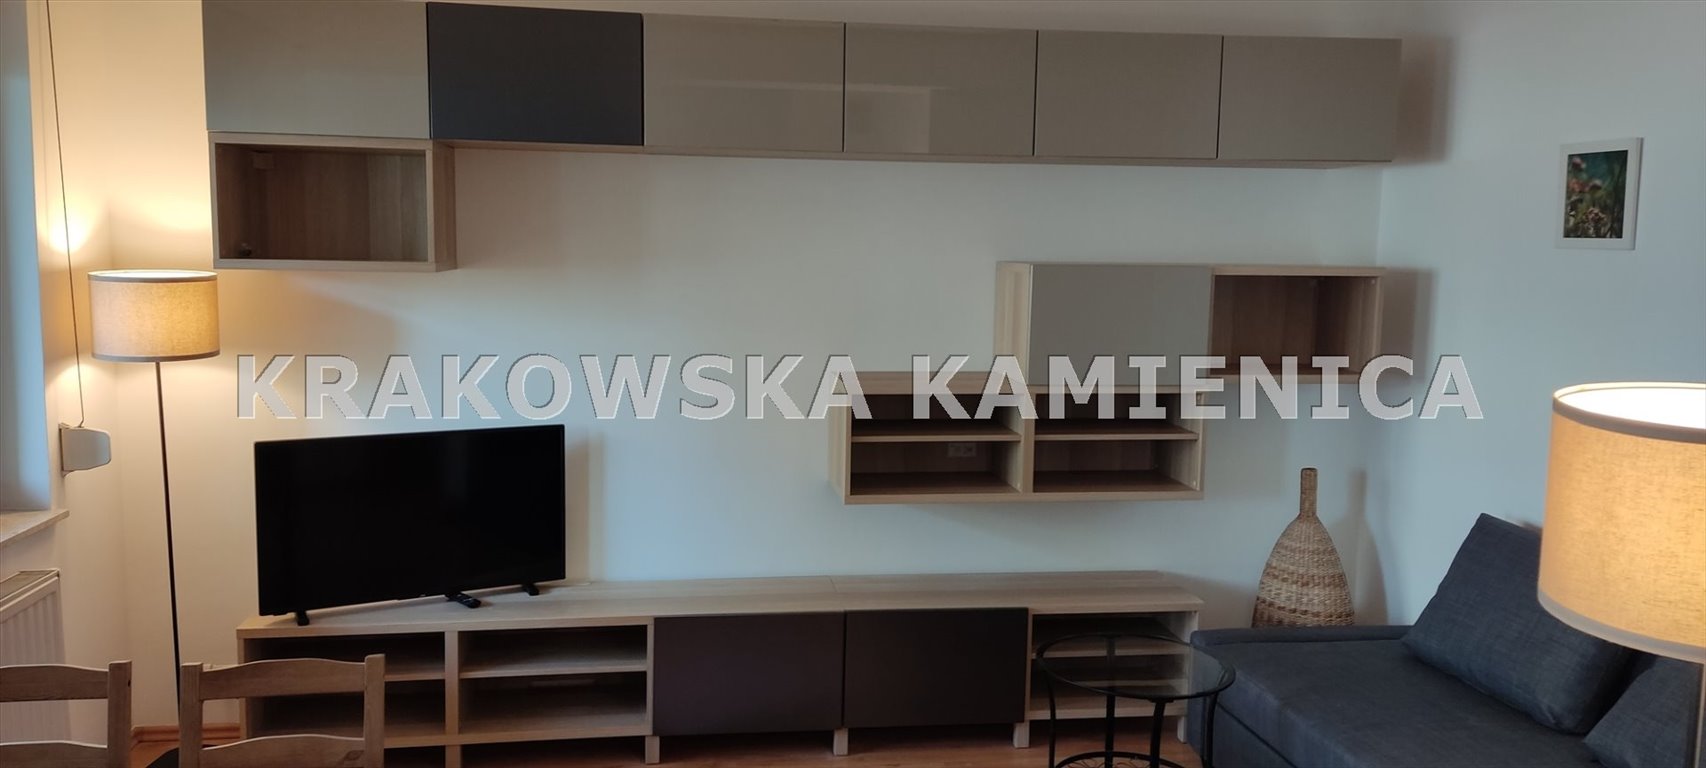 Mieszkanie dwupokojowe na sprzedaż Kraków, Zwierzyniec, Wola Justowska, Olszanicka  55m2 Foto 5